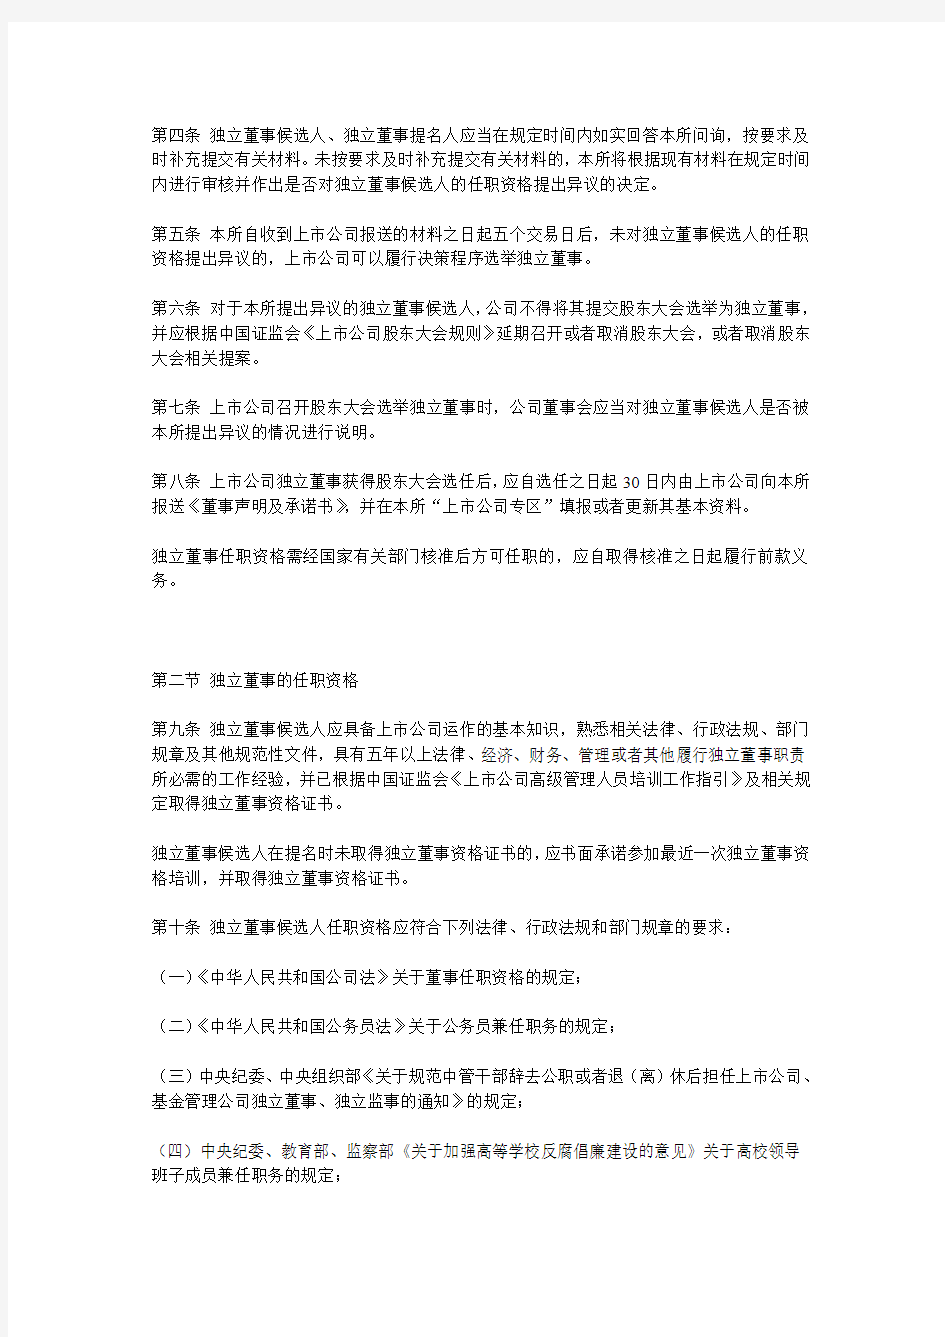 10.10.28关于发布《上海证券交易所上市公司独立董事备案及培训工作指引》的通知